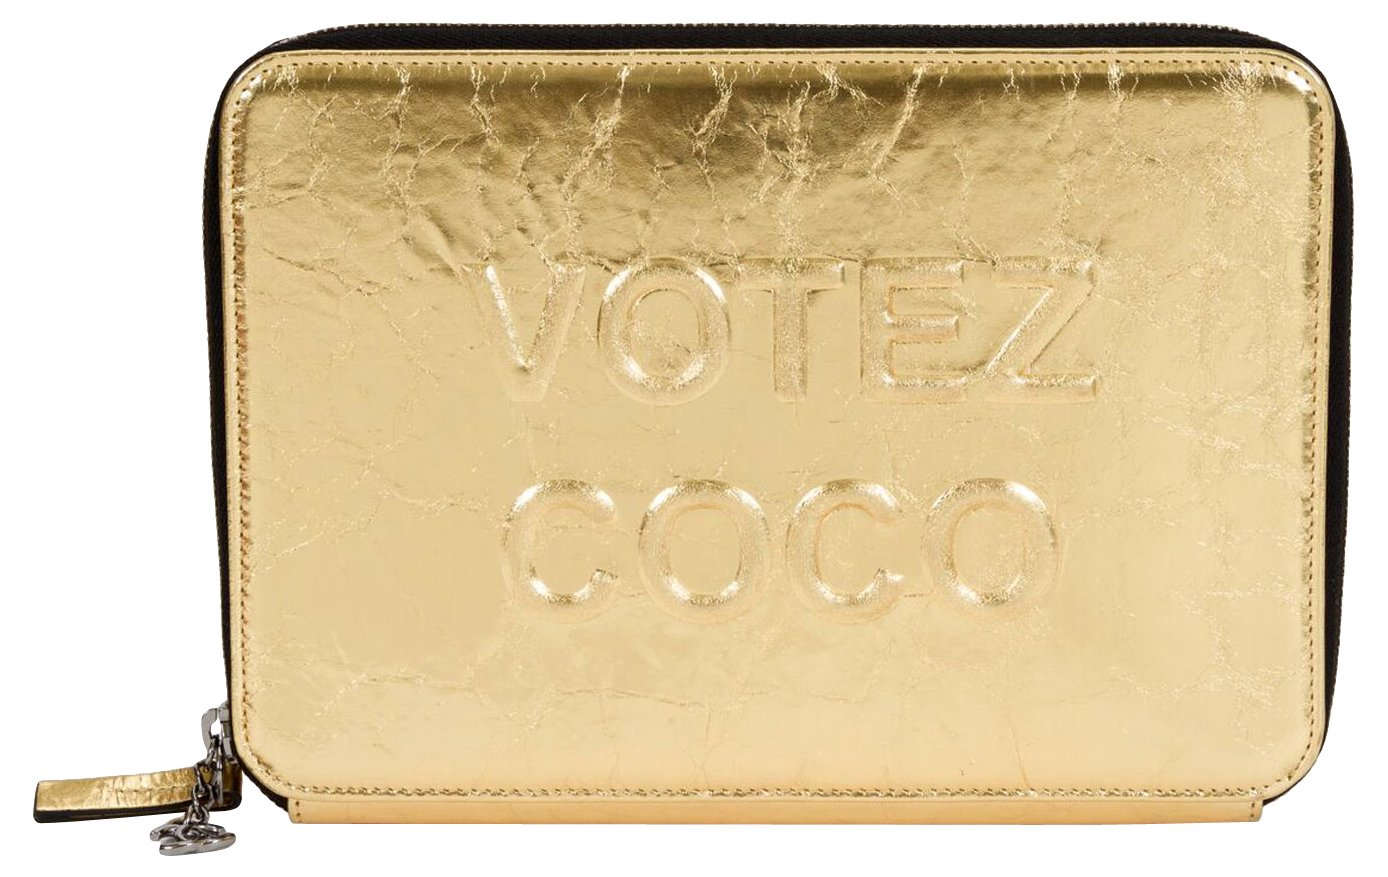 Chanel Votez Coco Gold Clutch - Vintage Lux